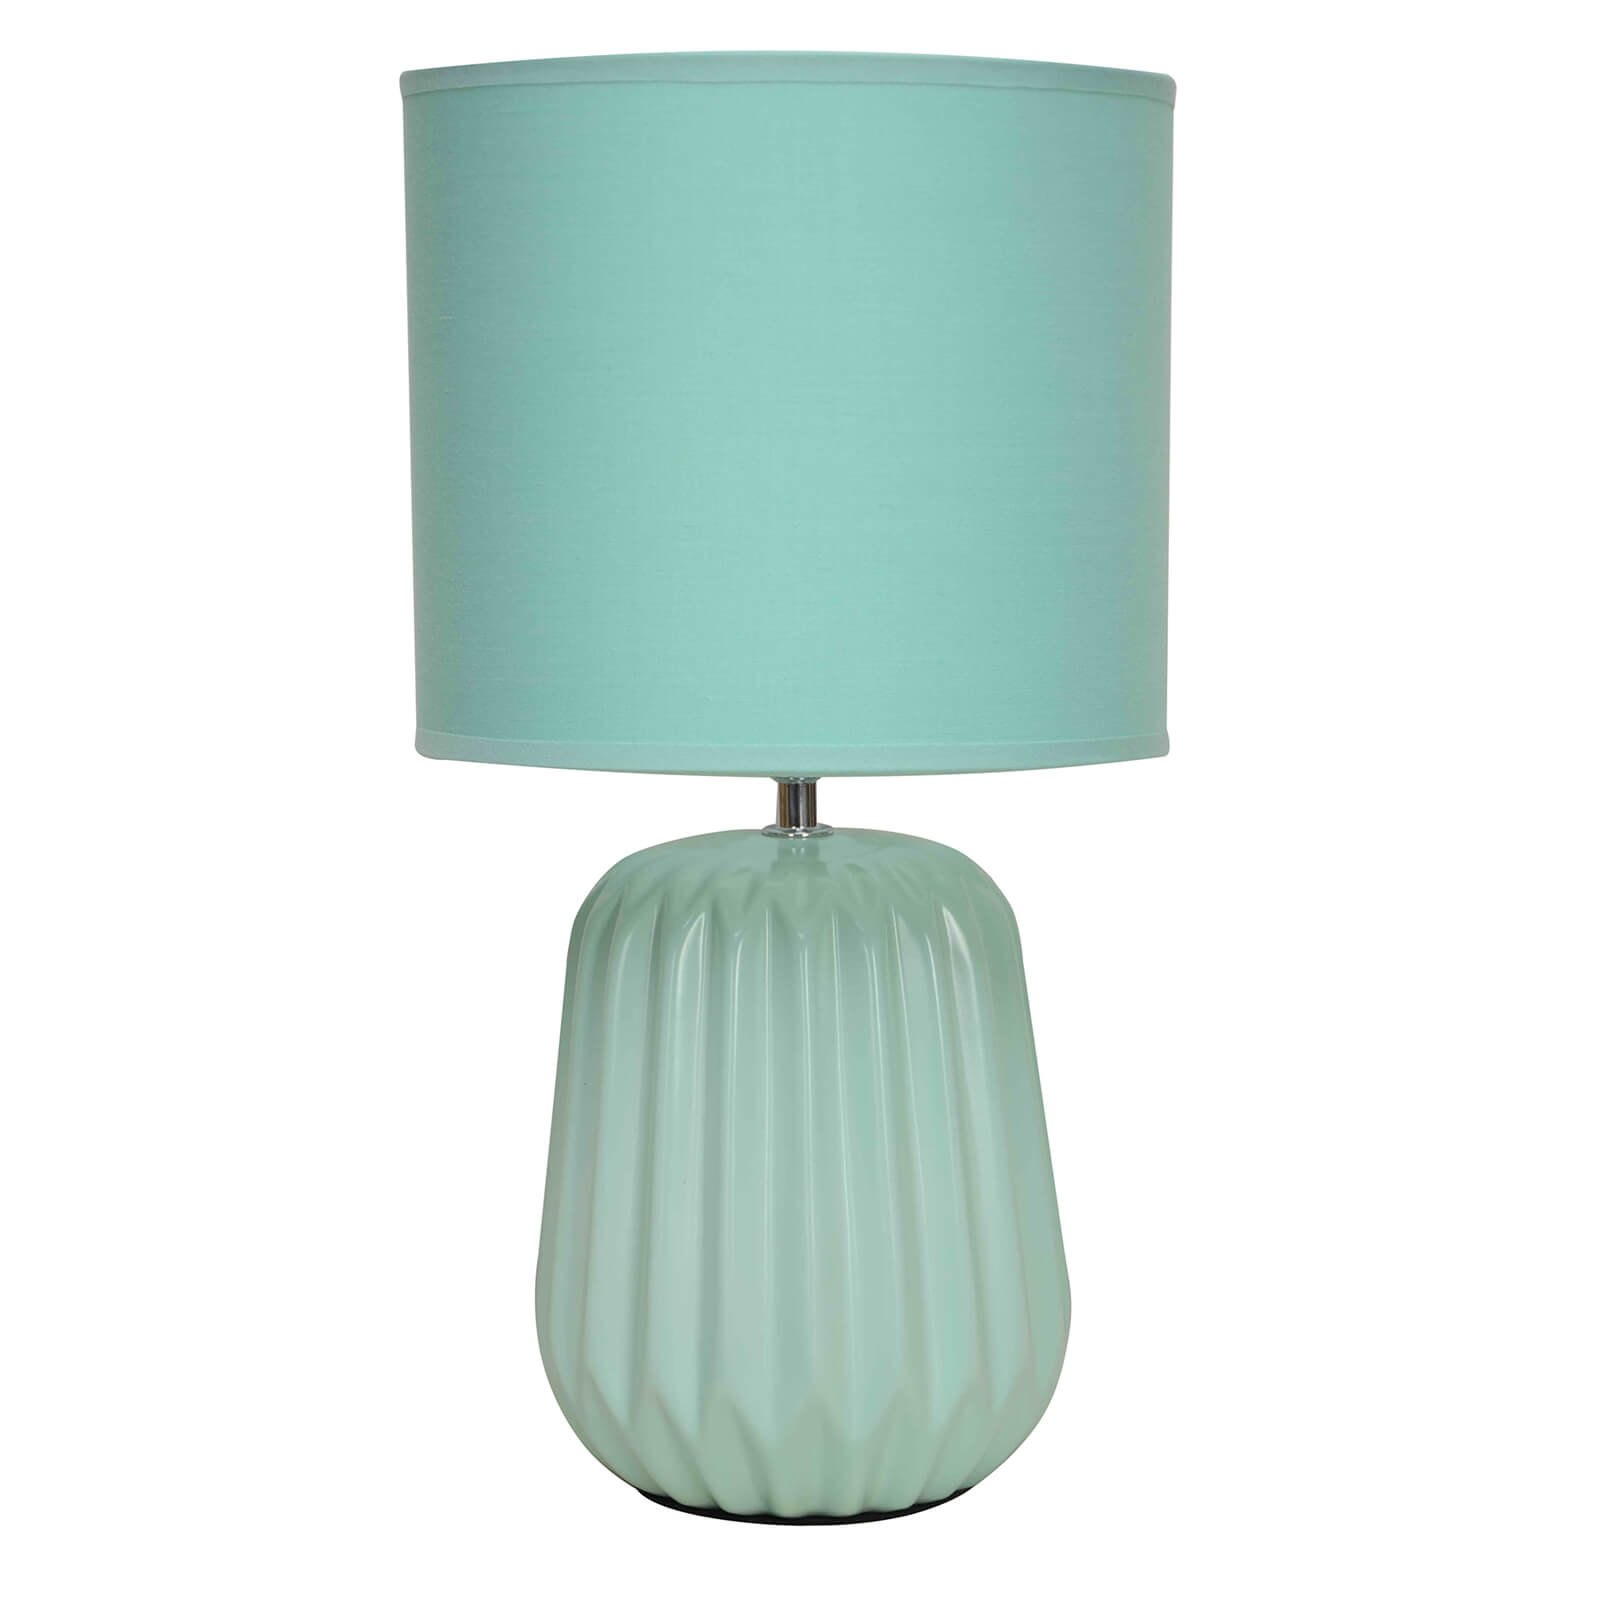 Winola Turquoise Ceramic Table Lamp